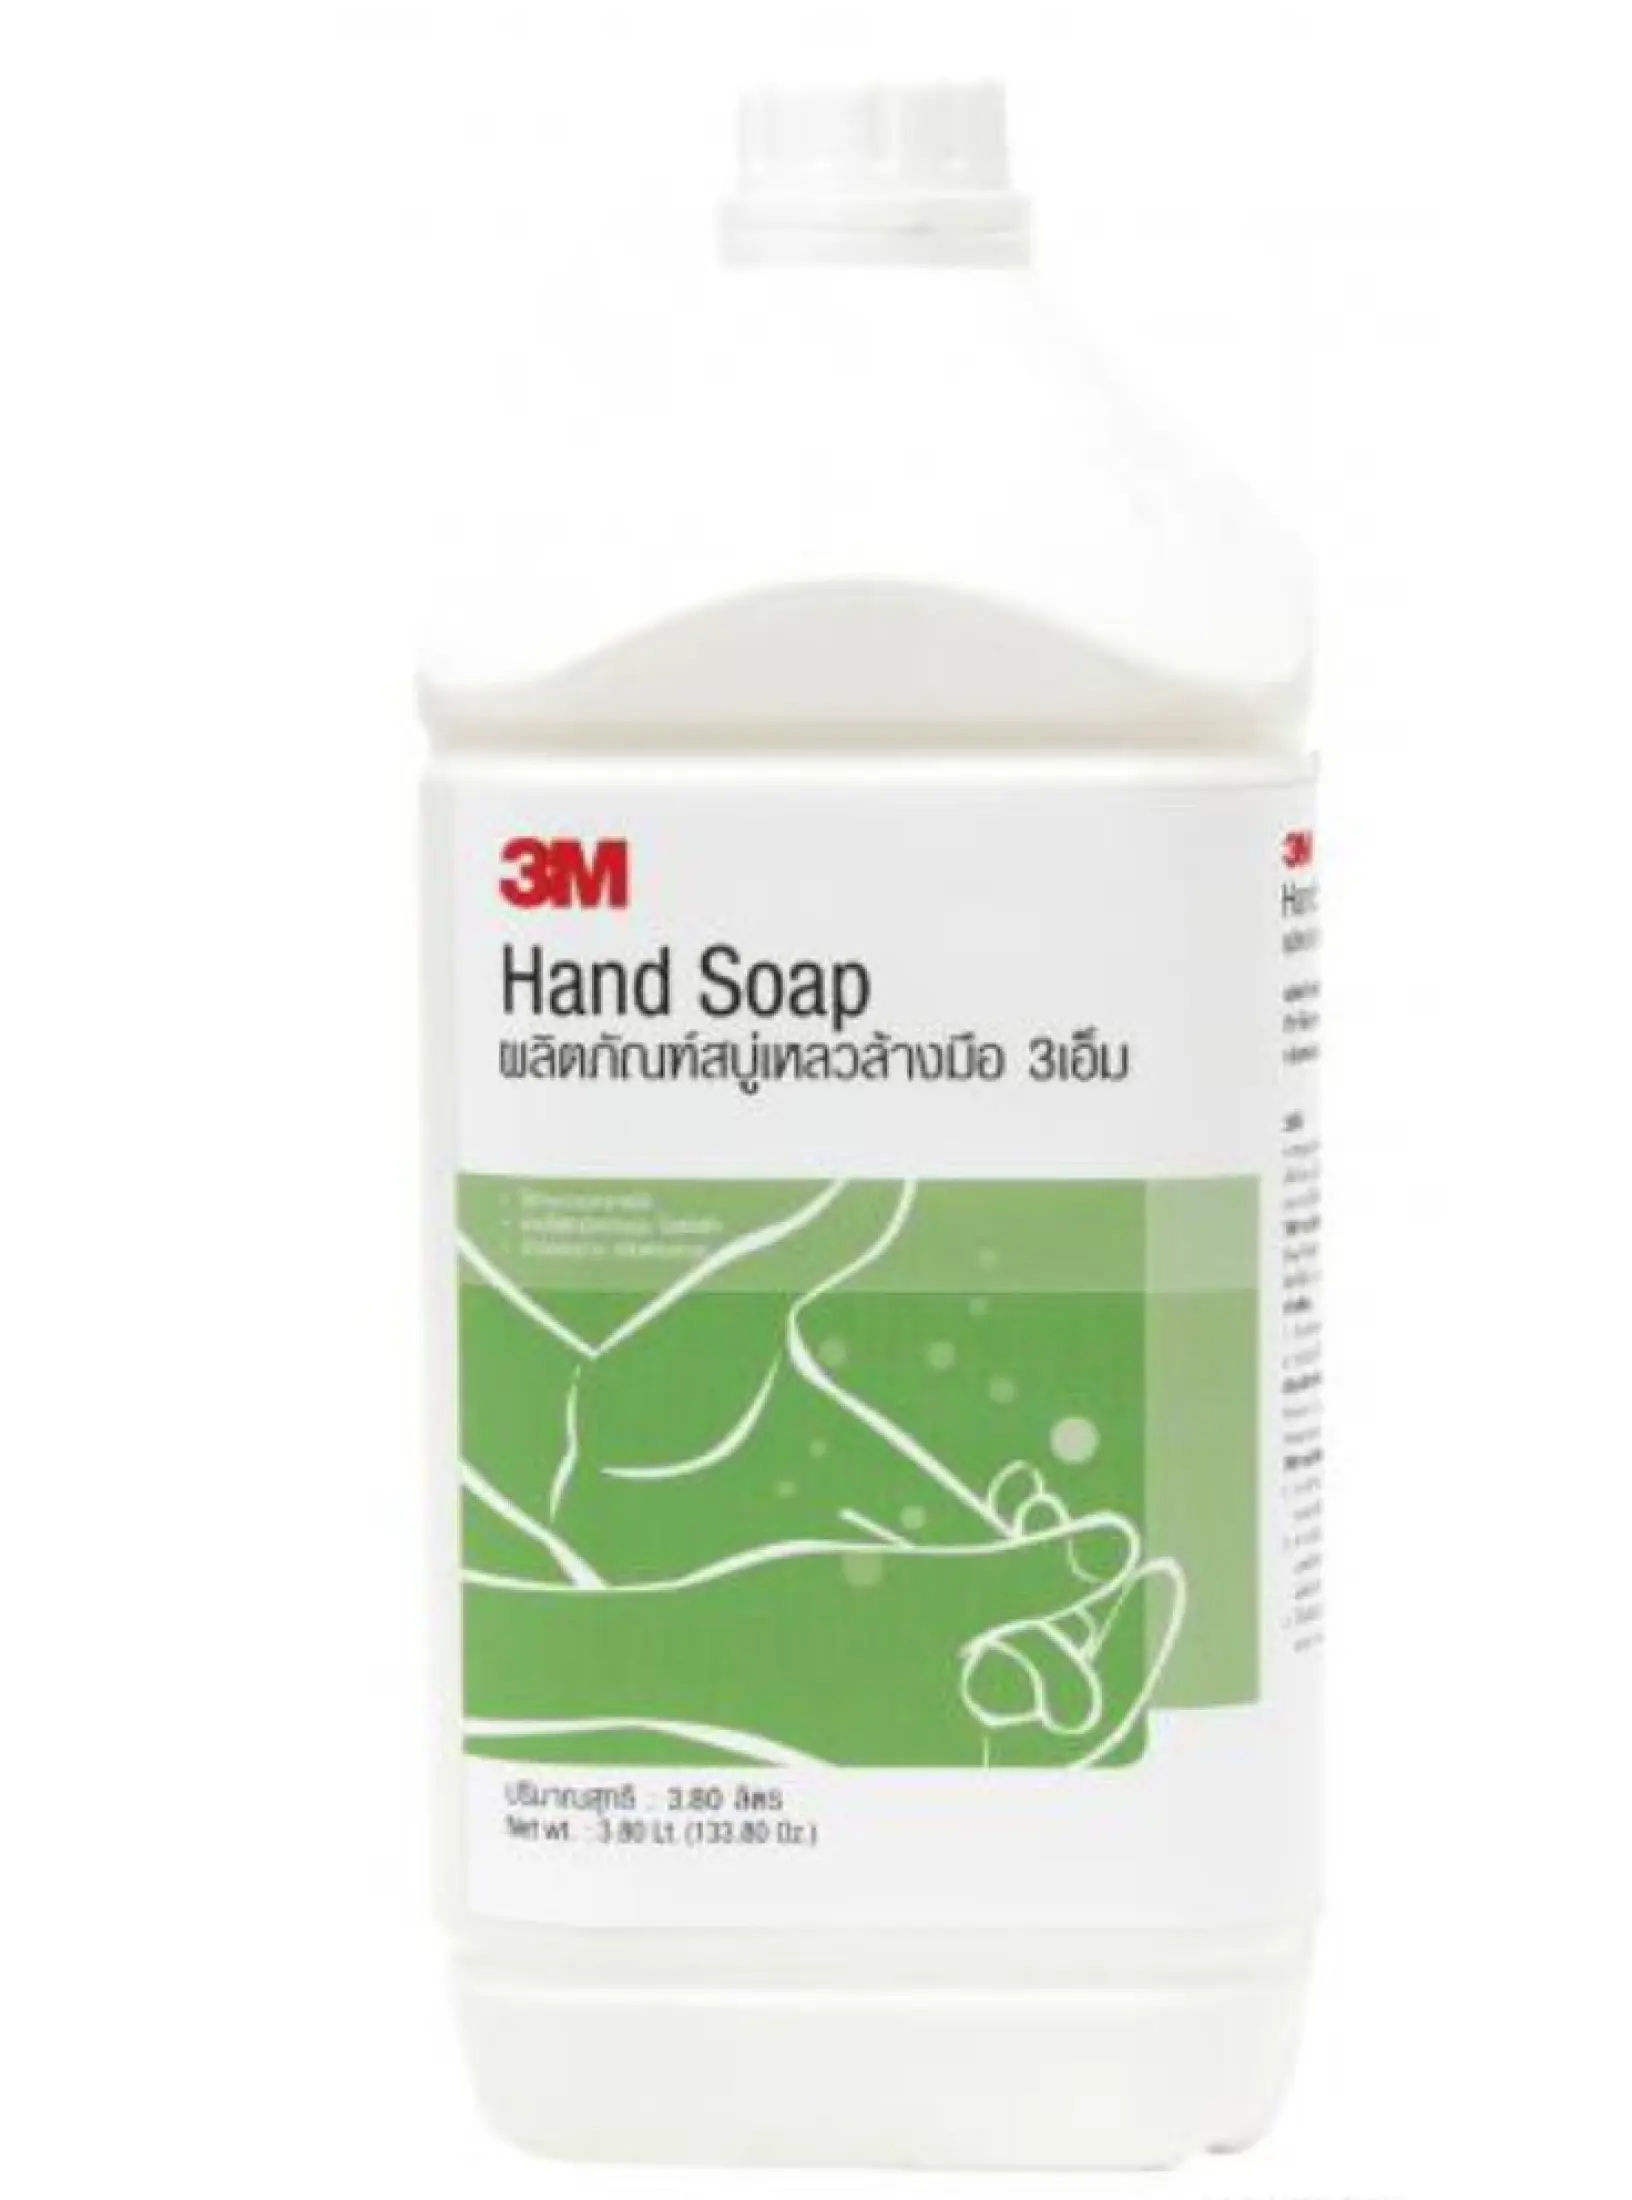 ข้อมูลประกอบของ 3เอ็ม ผลิตภัณฑ์สบู่เหลวล้างมือ ขนาด 3.8 ลิตร 3M HAND SOAP 3.8L